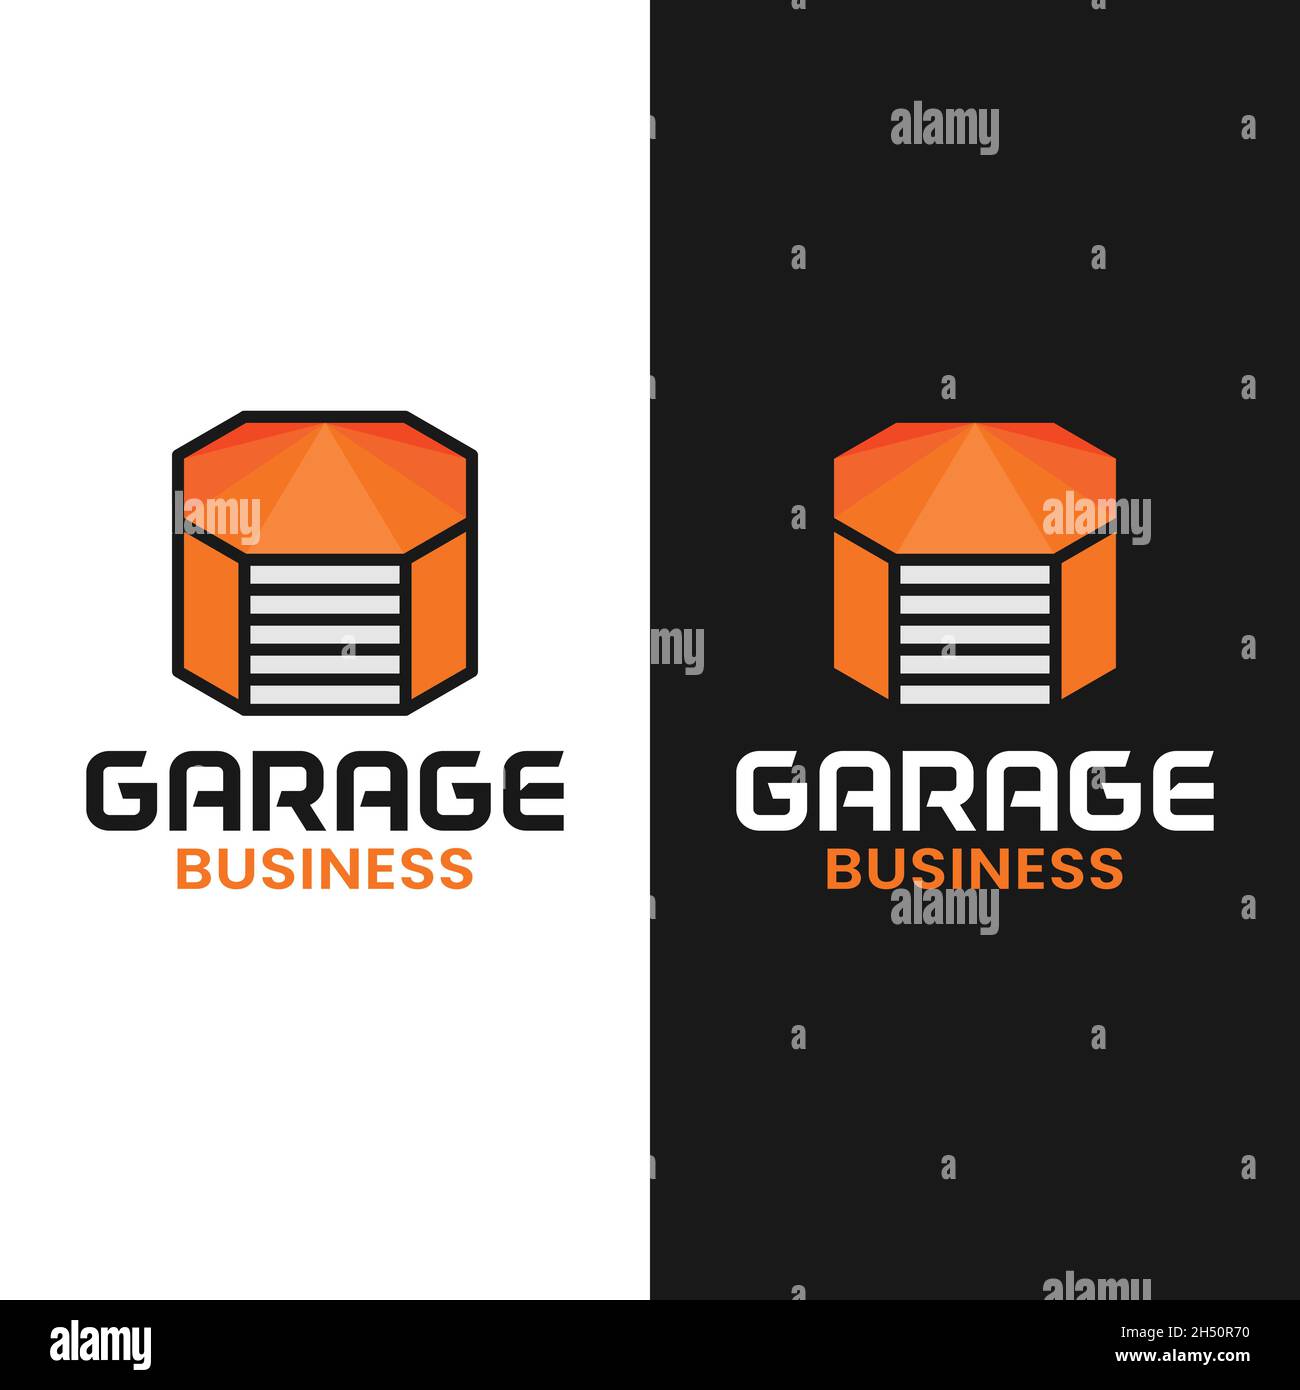 Garage arancione in modello Octagon Shape Logo Design. Adatto per Garage Shop, Workshop, Vehicle Maintenance Business Company logo del marchio aziendale. Illustrazione Vettoriale